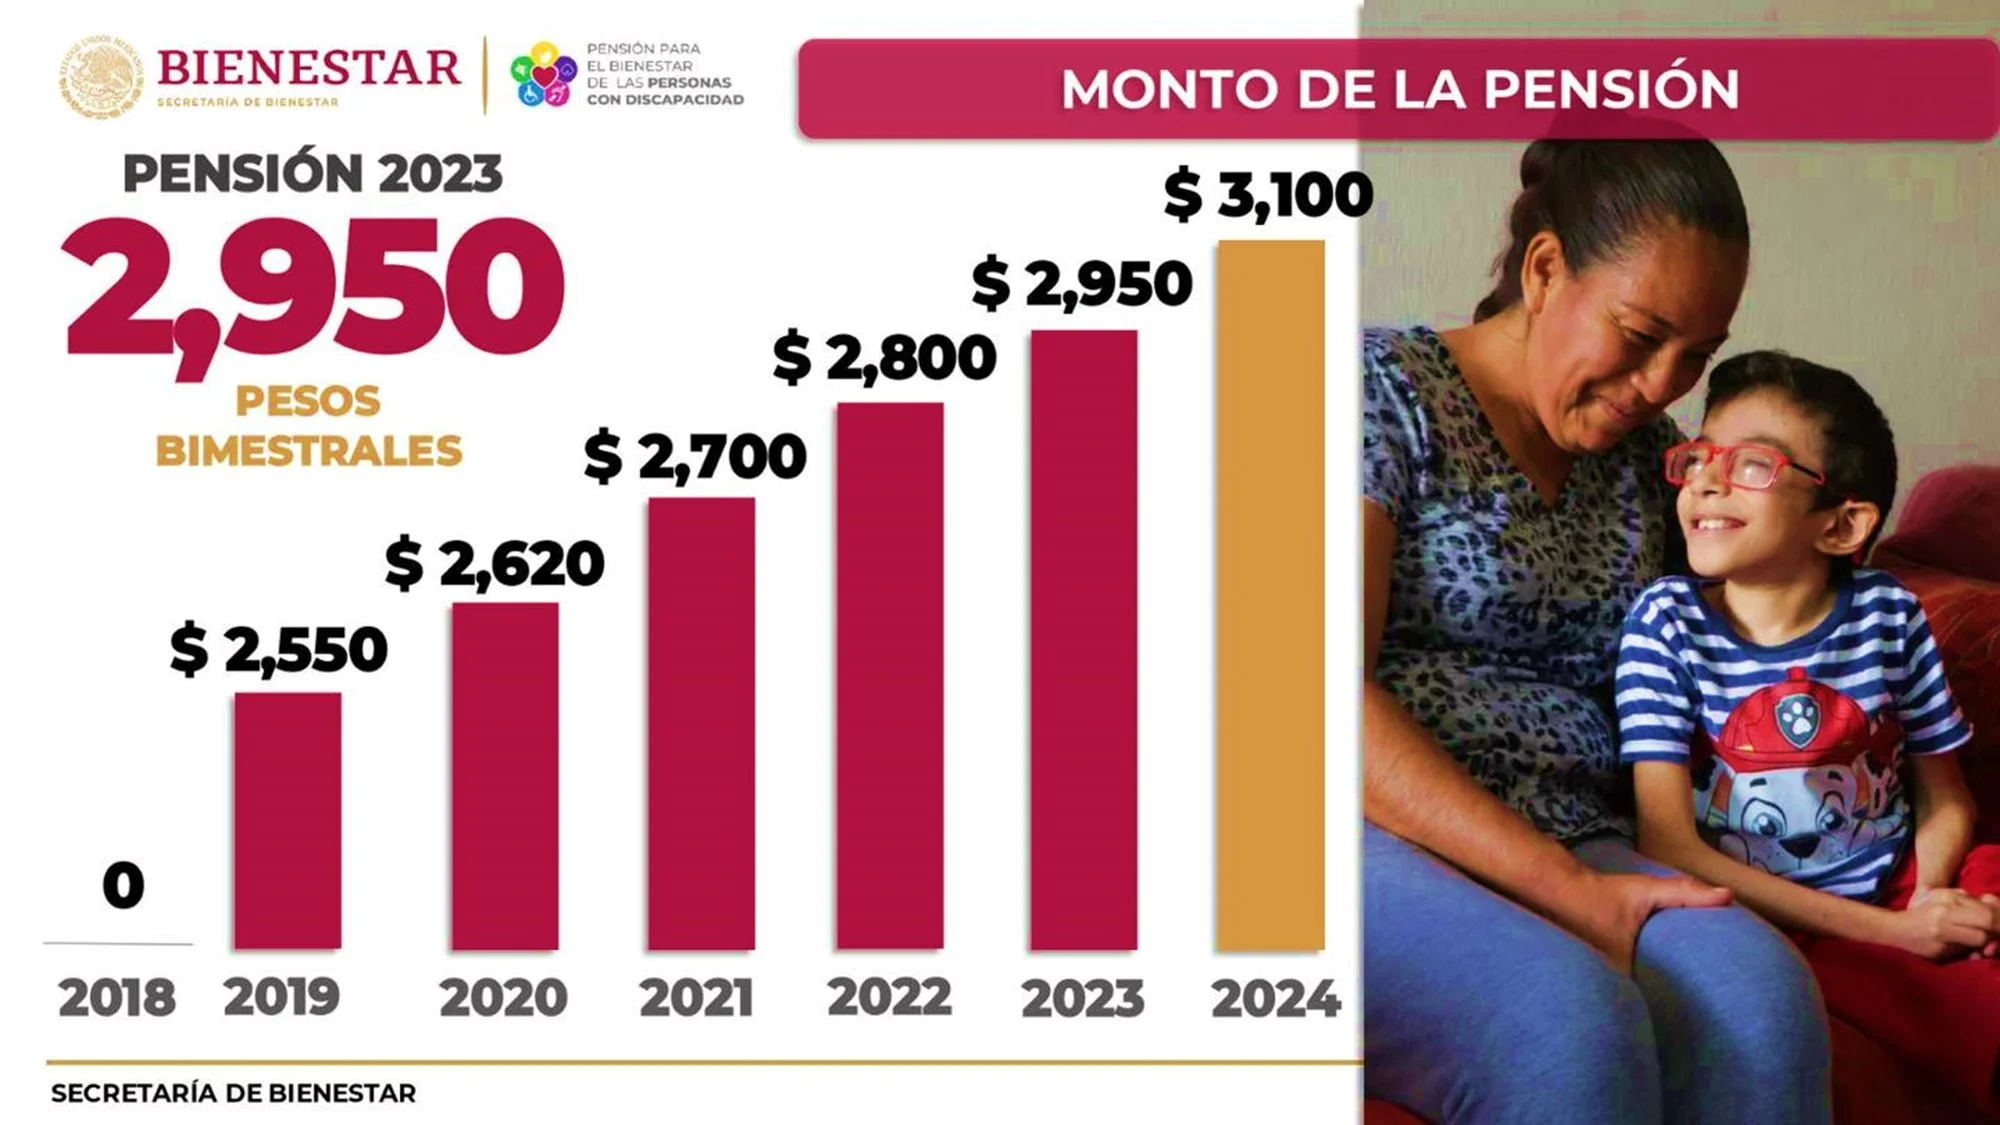 Ariadna Montiel Reyes anuncia: Aumento de la Pensión del Bienestar para personas con Discapacidad 2023